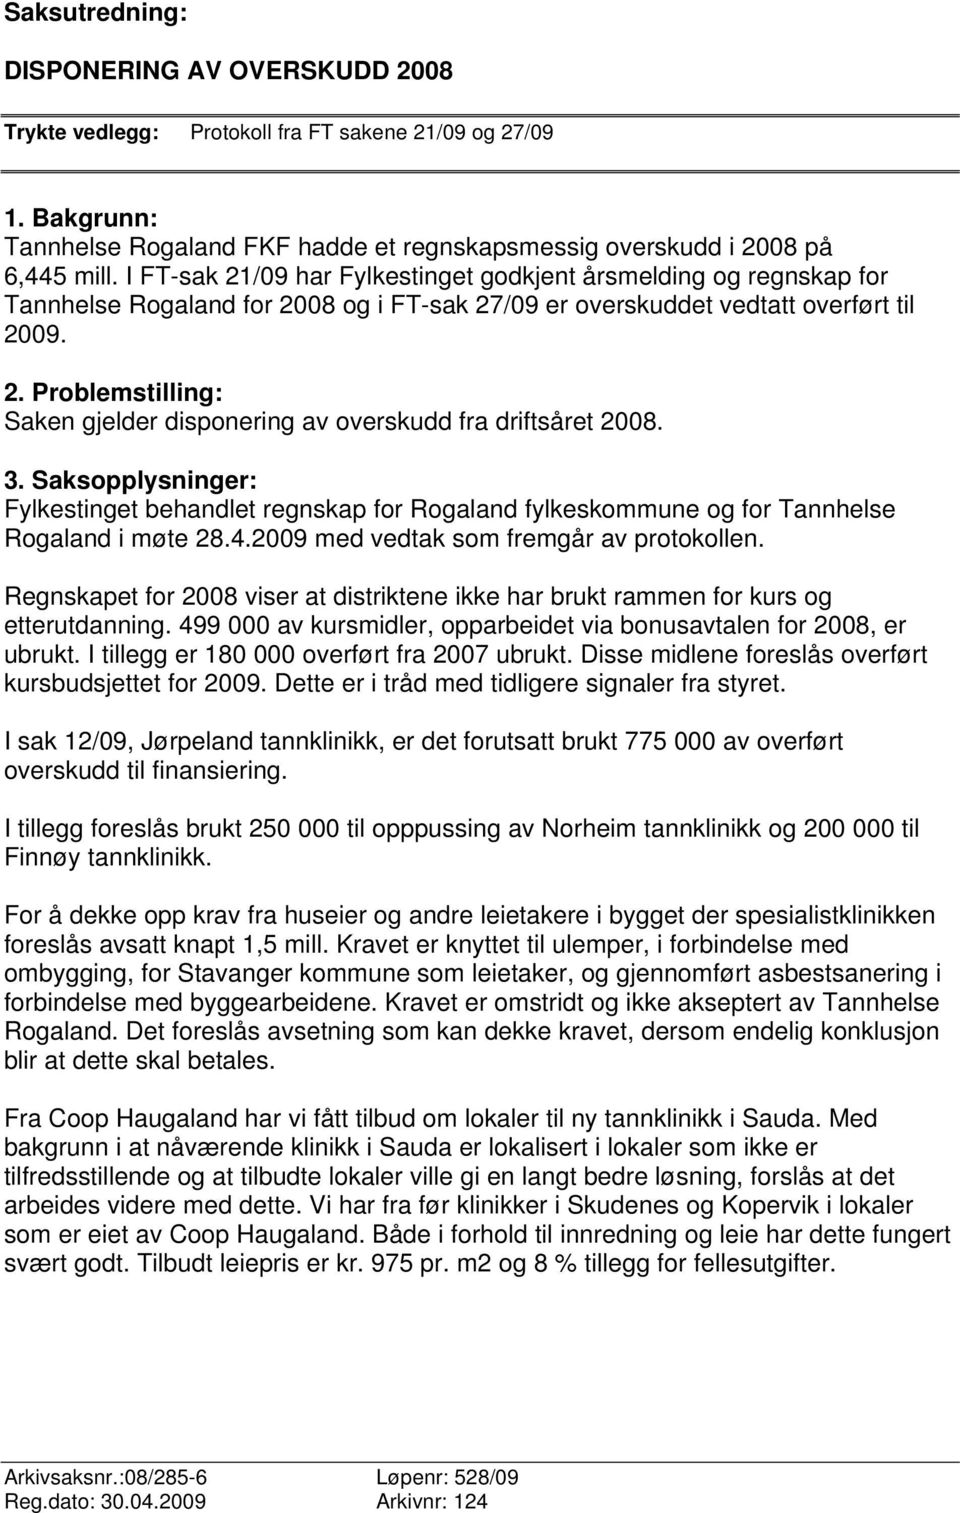 3. Saksopplysninger: Fylkestinget behandlet regnskap for Rogaland fylkeskommune og for Tannhelse Rogaland i møte 28.4.2009 med vedtak som fremgår av protokollen.